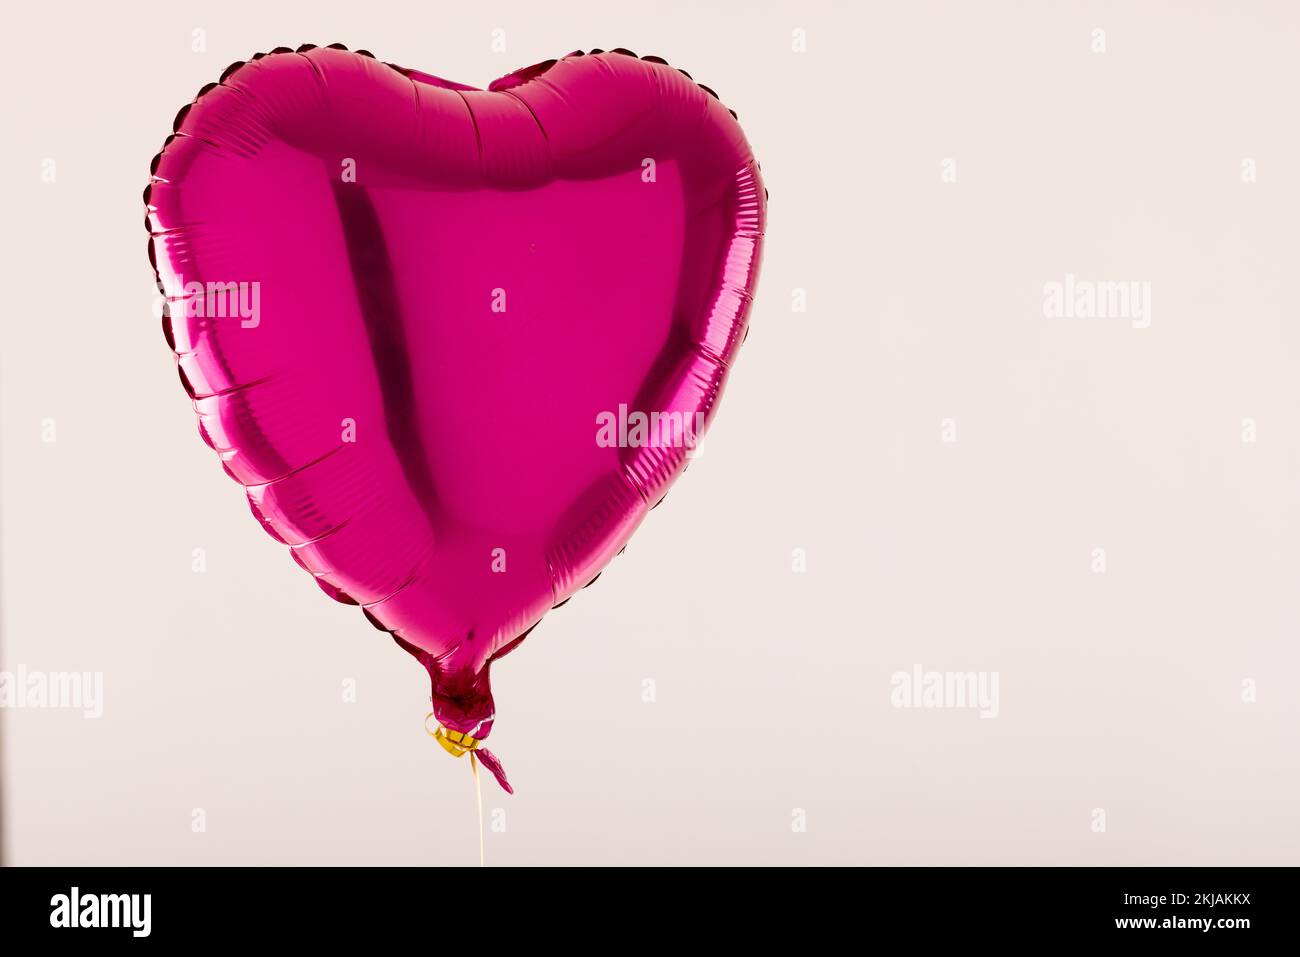 Ballon rose brillant en forme de coeur flottant sur fond blanc avec espace de copie Banque D'Images